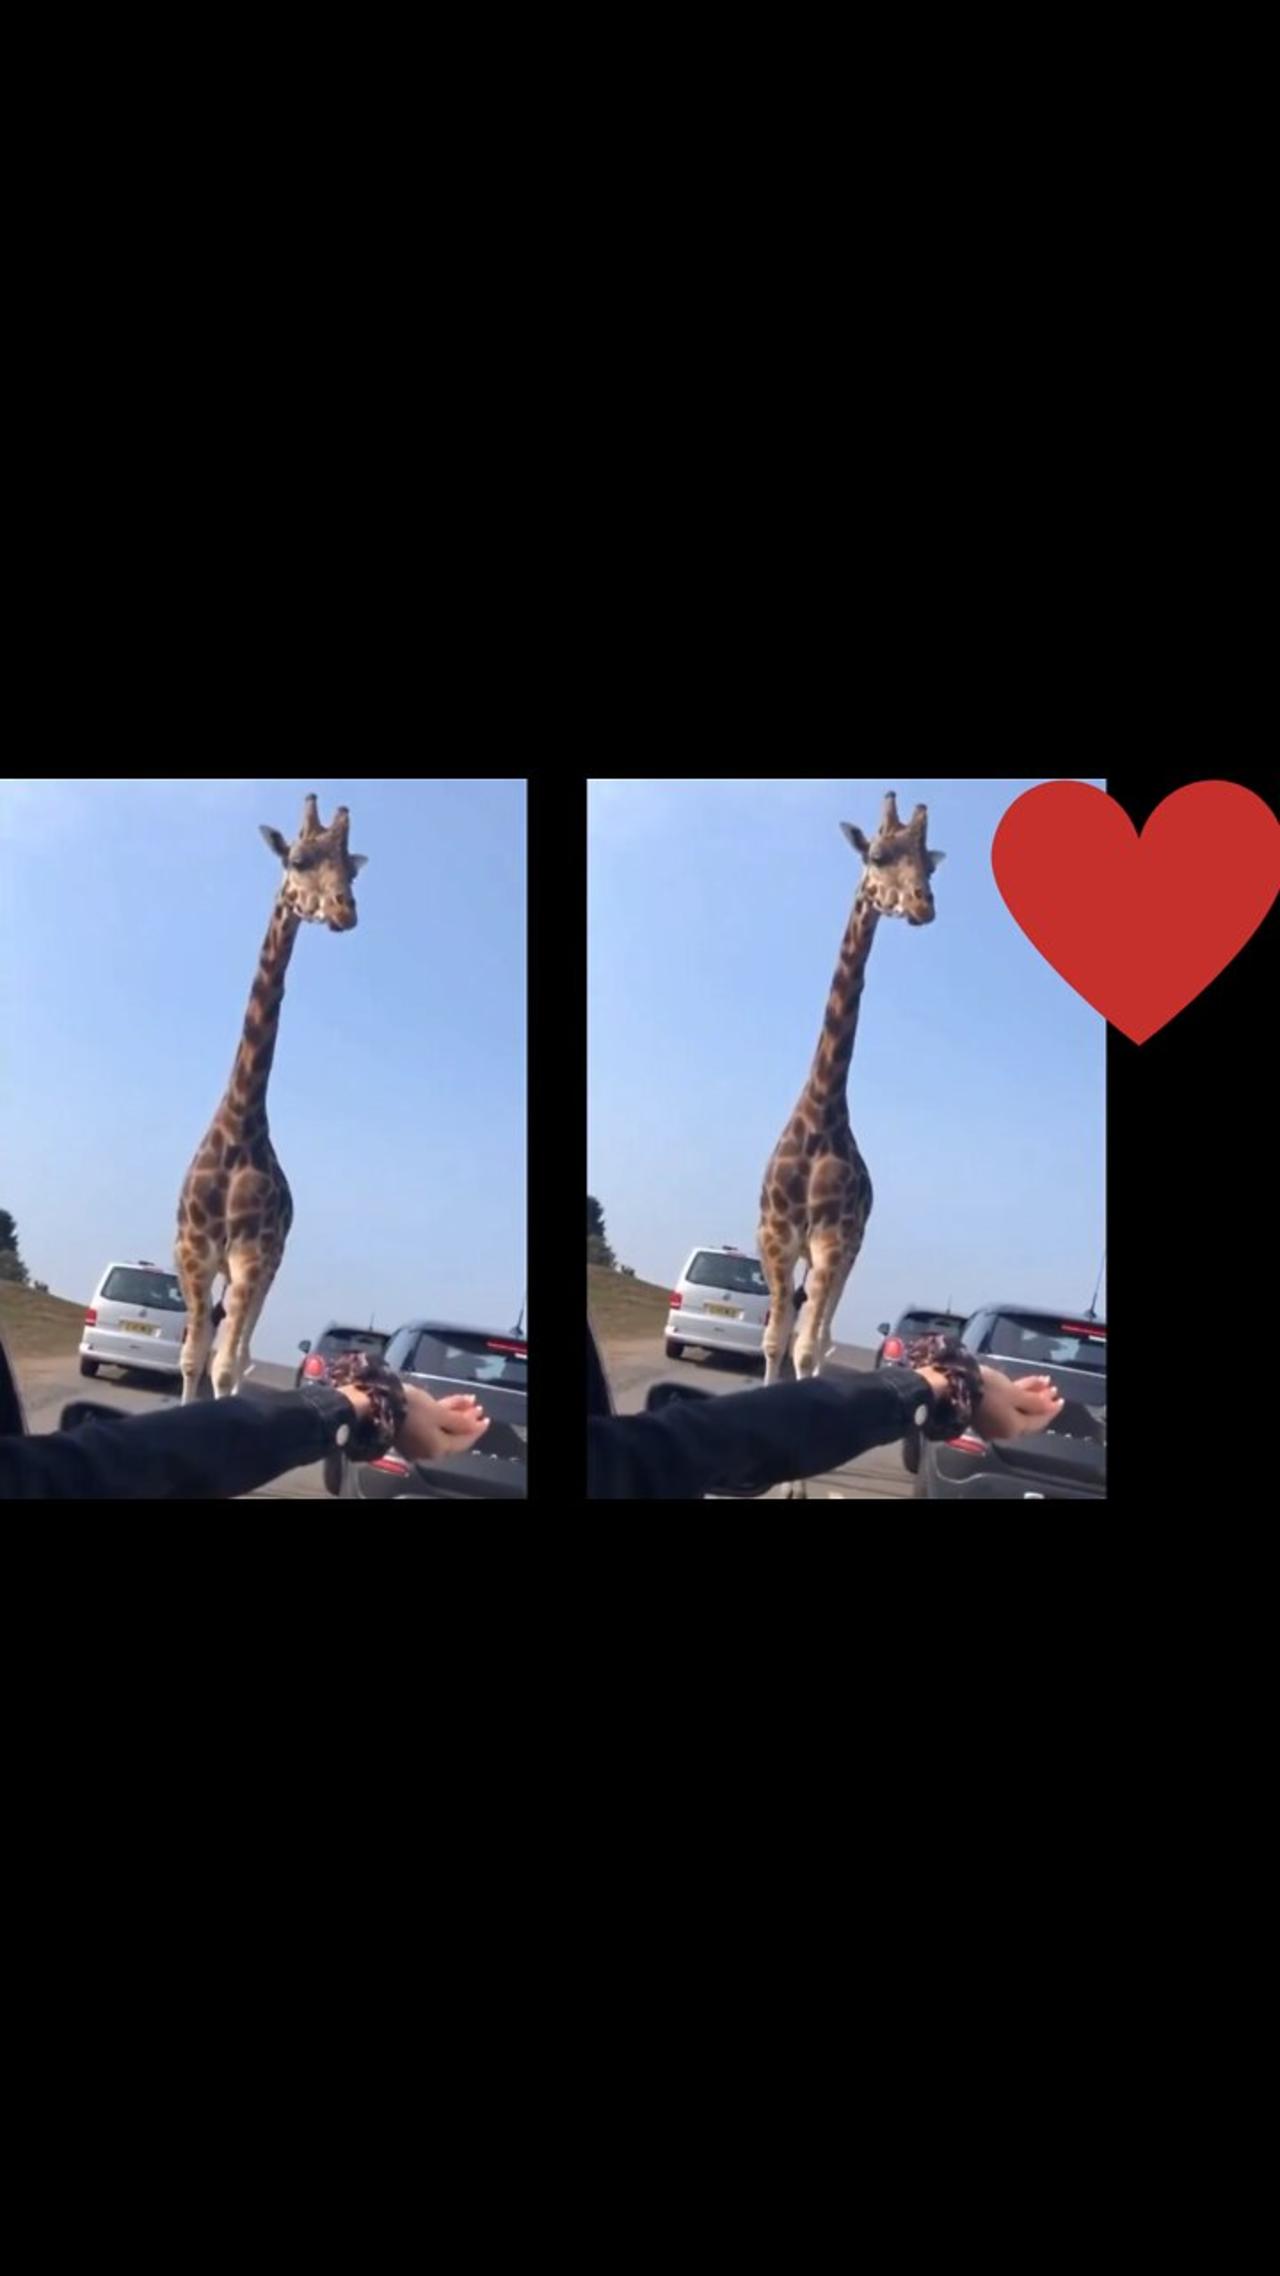 A giraffe eats food from human hands